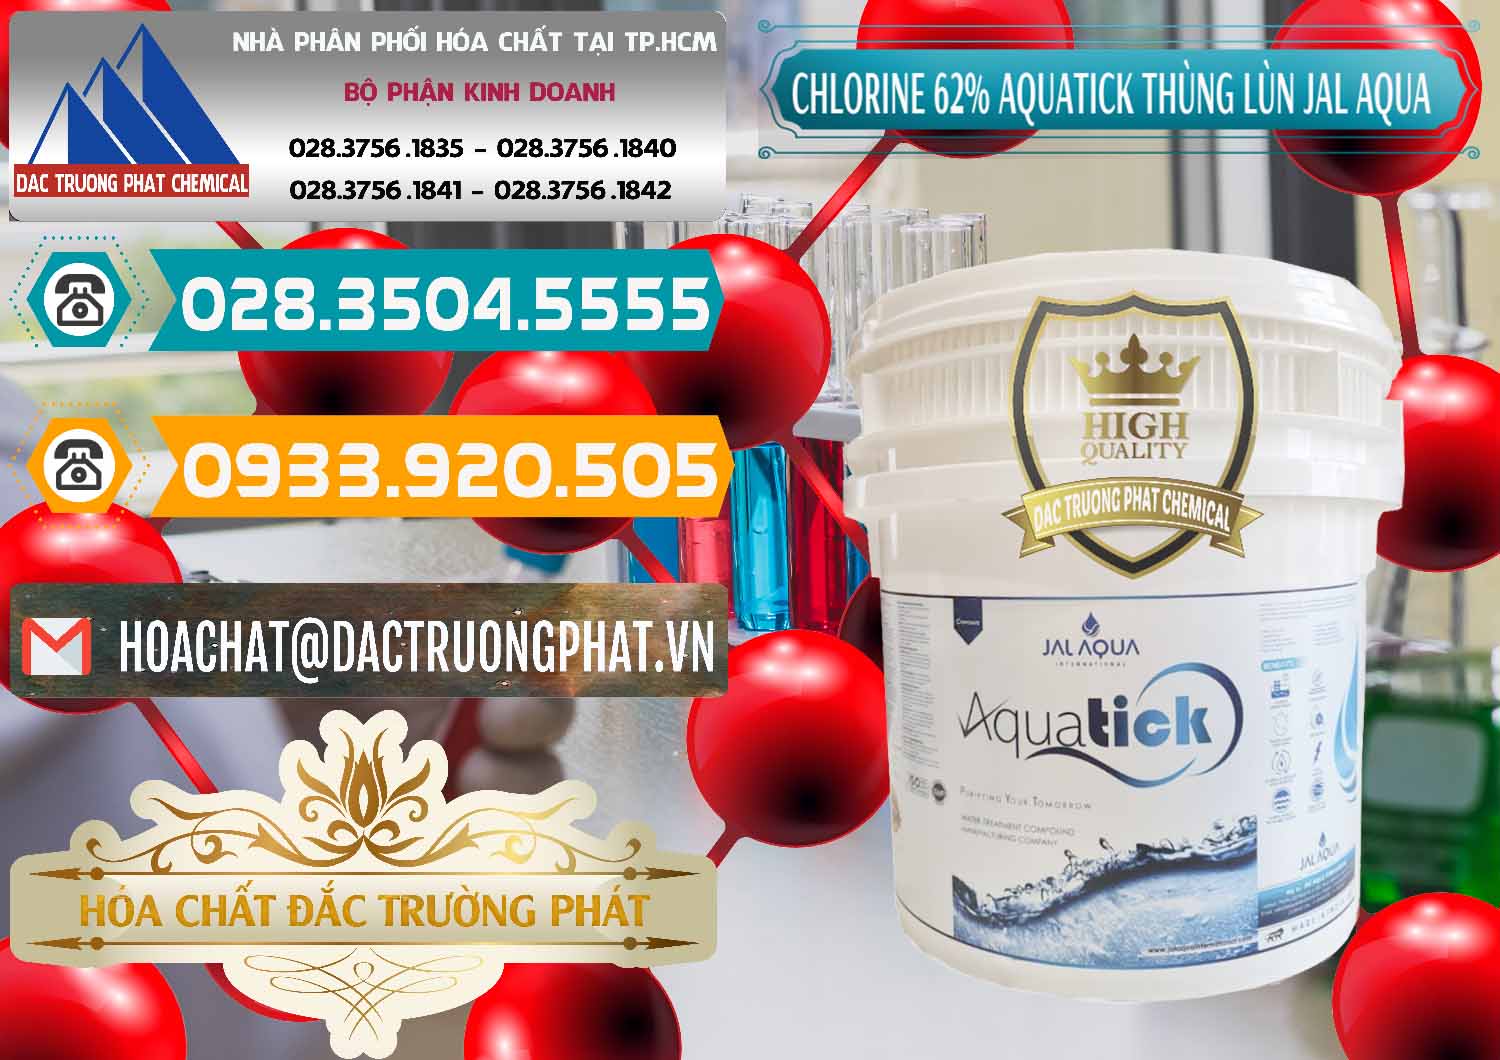 Nơi cung ứng & bán Chlorine – Clorin 62% Aquatick Thùng Lùn Jal Aqua Ấn Độ India - 0238 - Đơn vị bán - phân phối hóa chất tại TP.HCM - congtyhoachat.vn